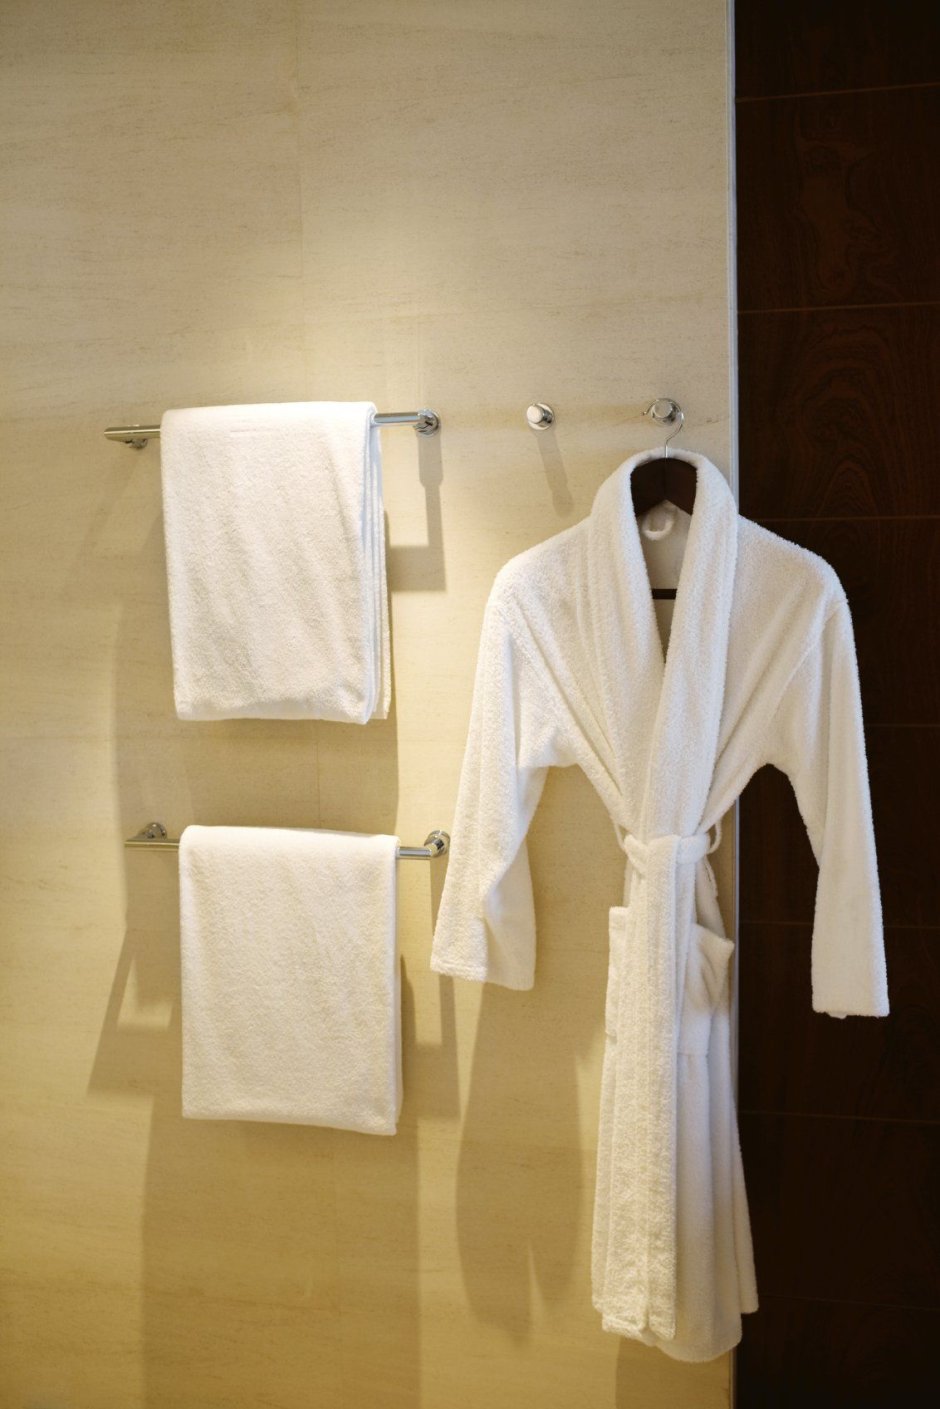 Полотенца и халаты в ванной комнате